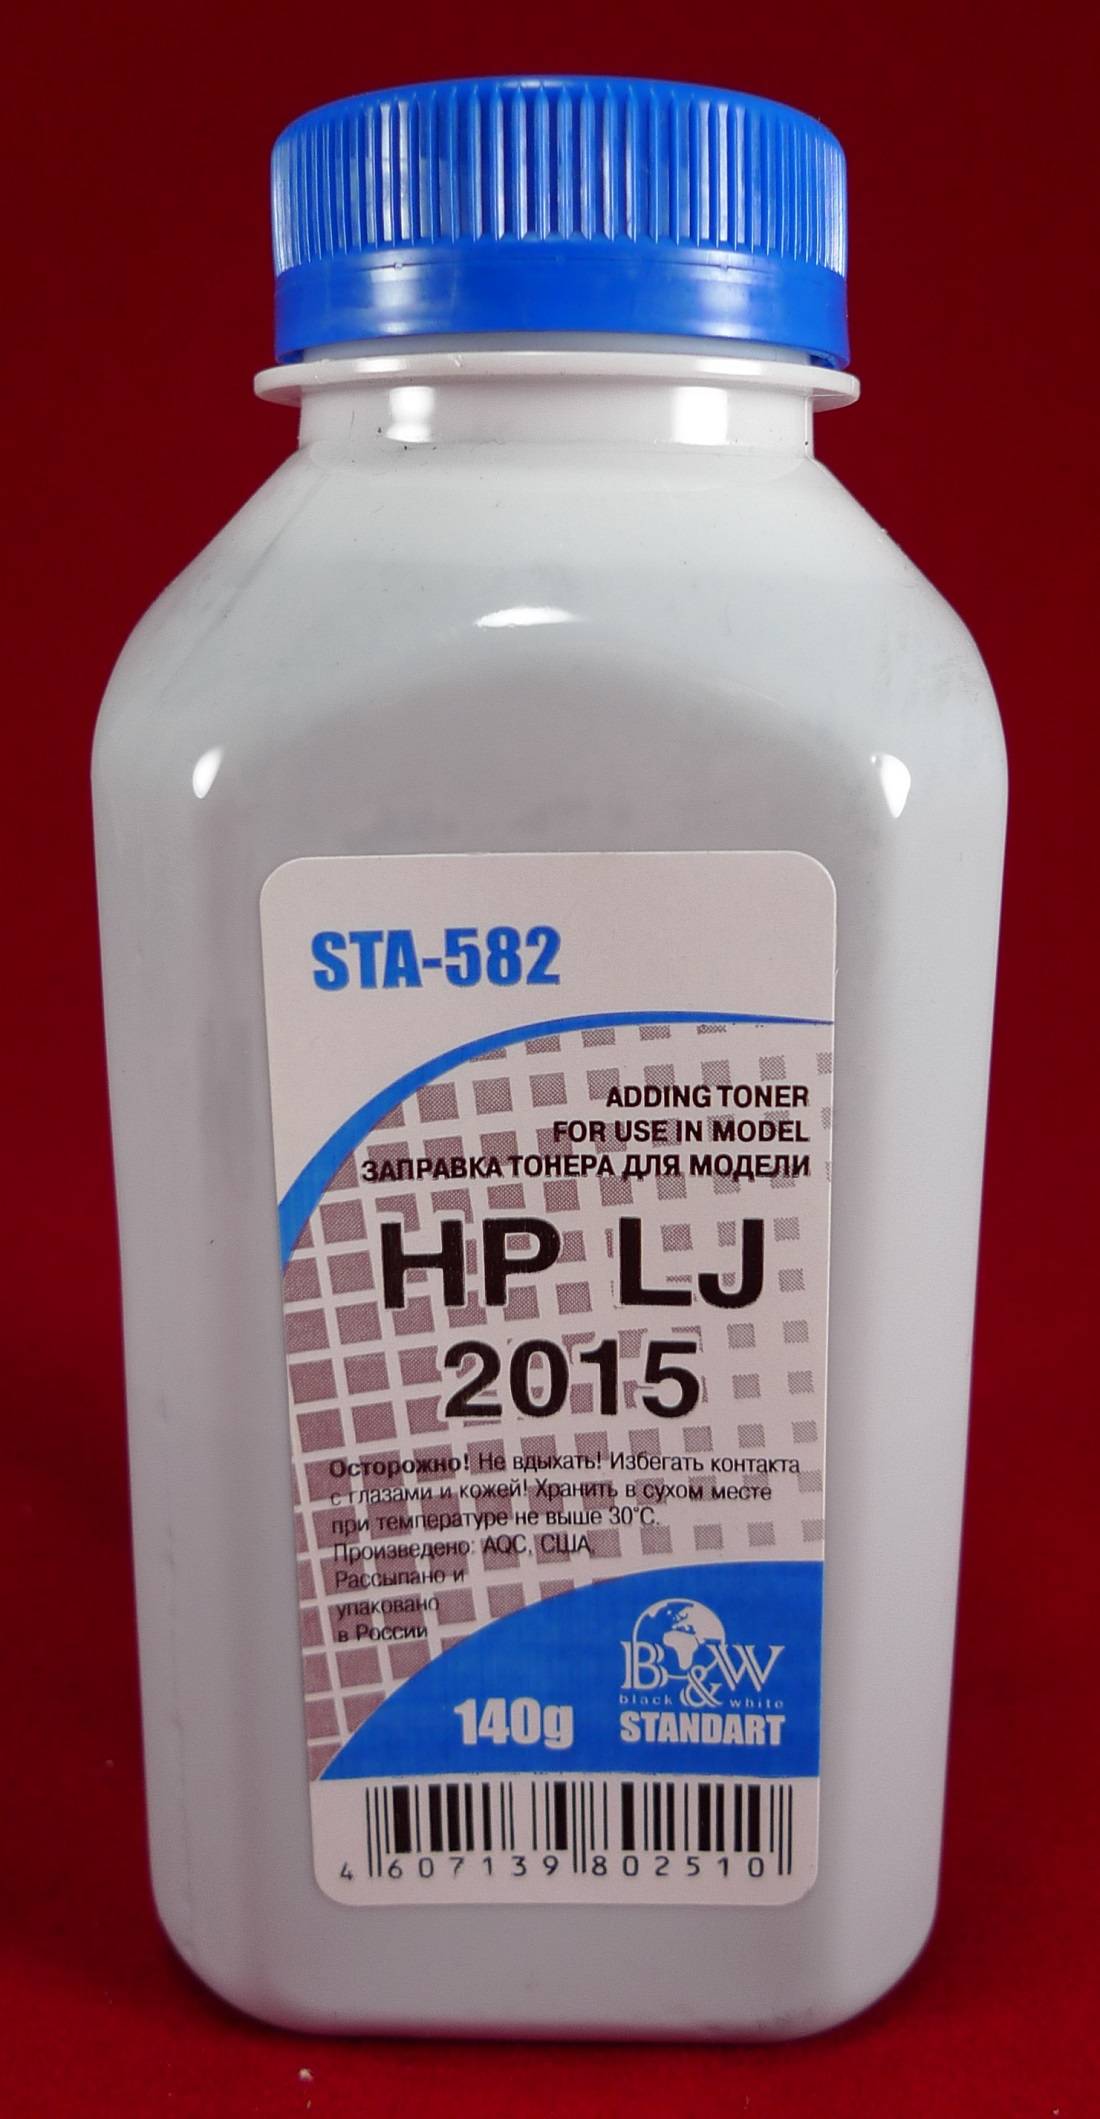 Фото Тонер HP LJ 2015, 2014, 2727 (фл. 140г) B&W Standart фас России {STA-582}